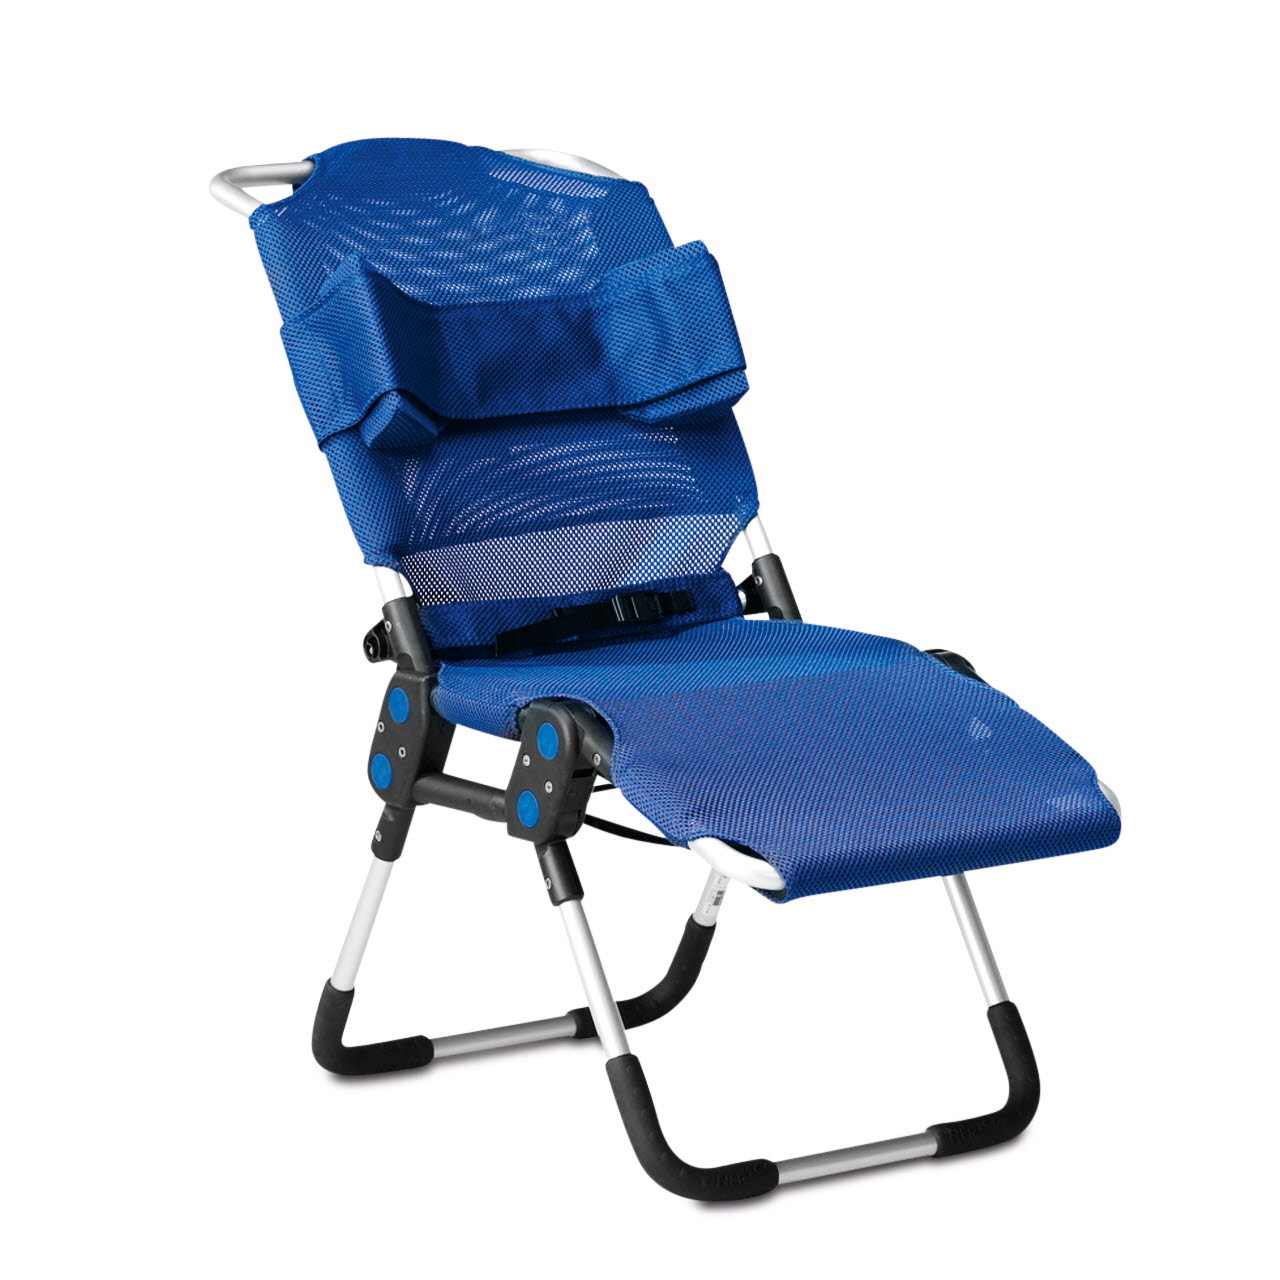 Для купания детей с дцп. Стул-гамак для ванны r82 Manatee (Манати). Кресло для детей инвалидов с ДЦП R-82. Санитарное кресло r82. Шезлонг r82.